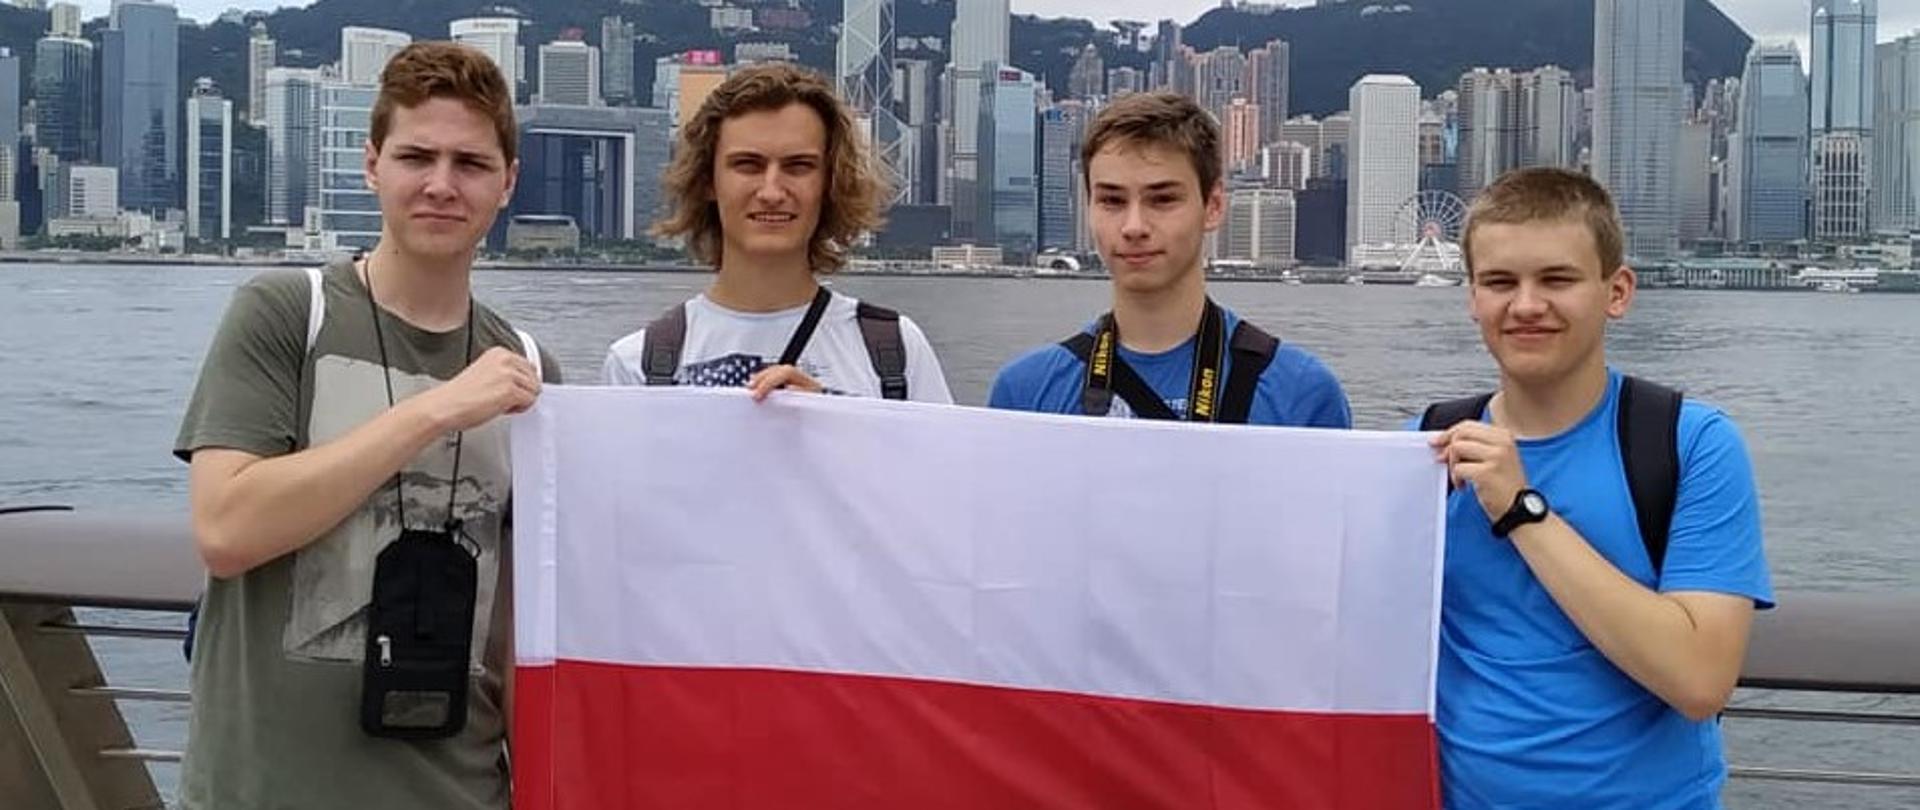 Międzynarodowe sukcesy polskich uczniów. Polscy uczniowie na XVI Międzynarodowej Olimpiadzie Geograficznej w Hongkongu. 